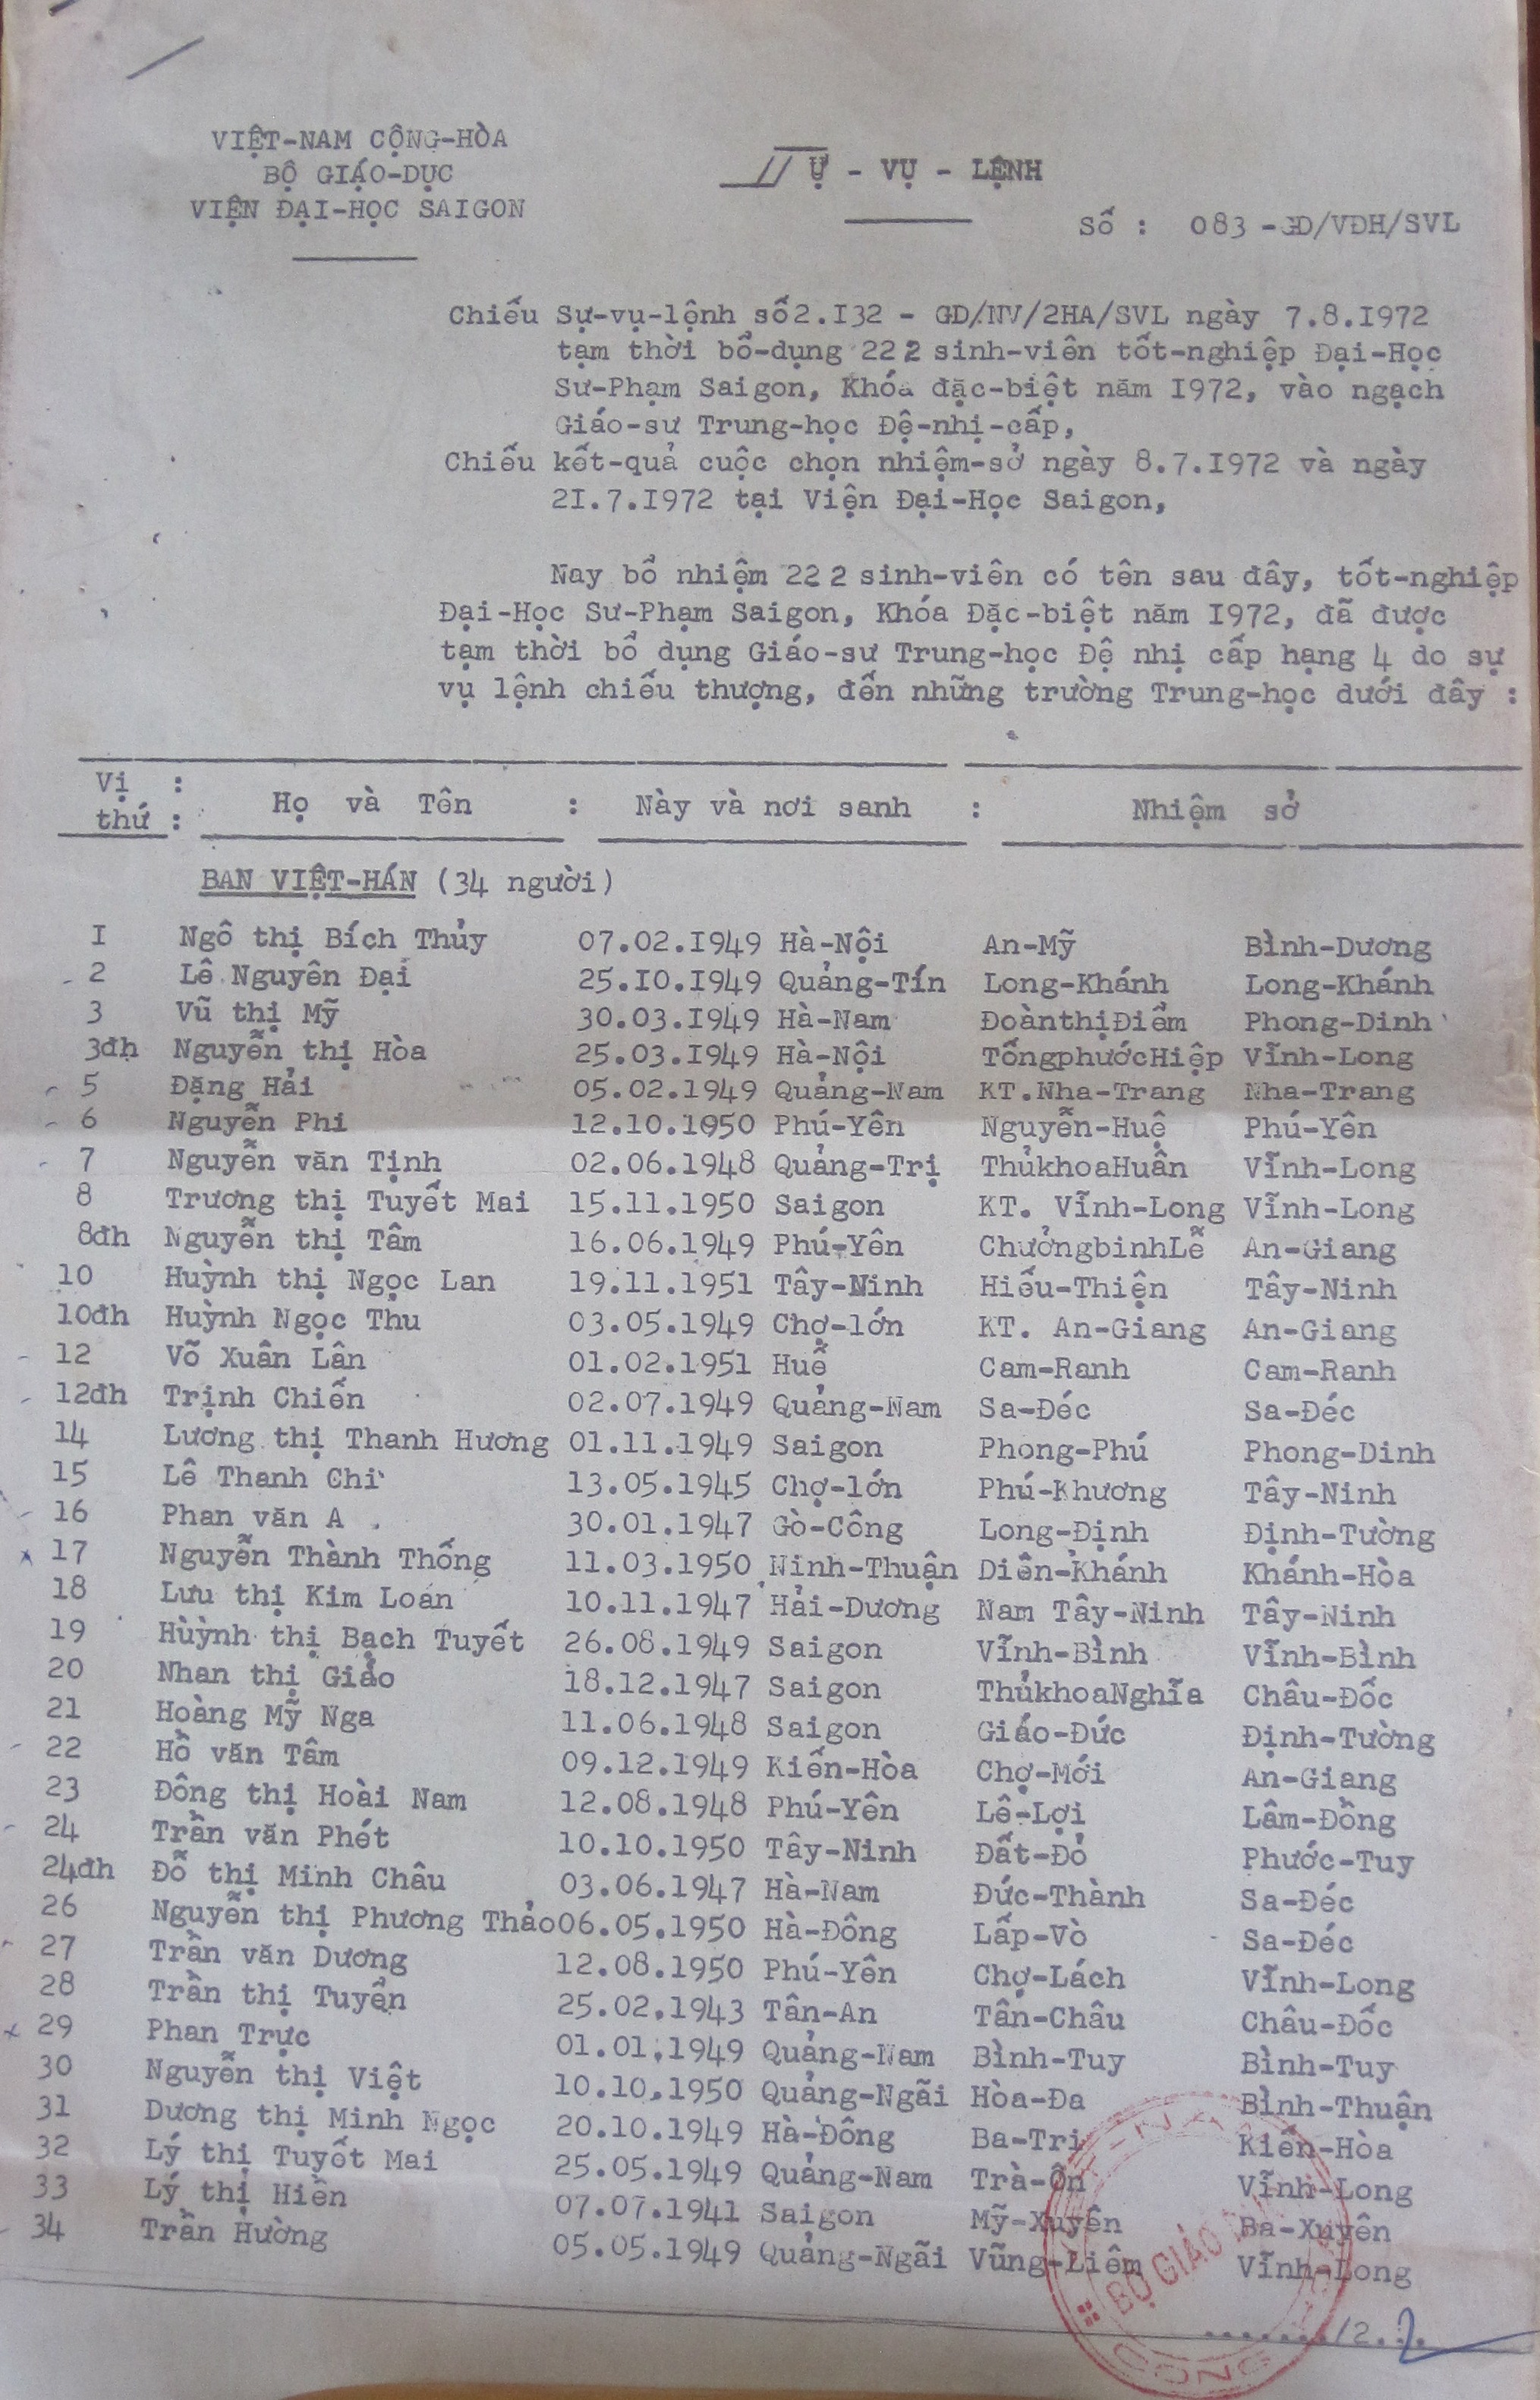 danh sách ban Việt Hán 69-72